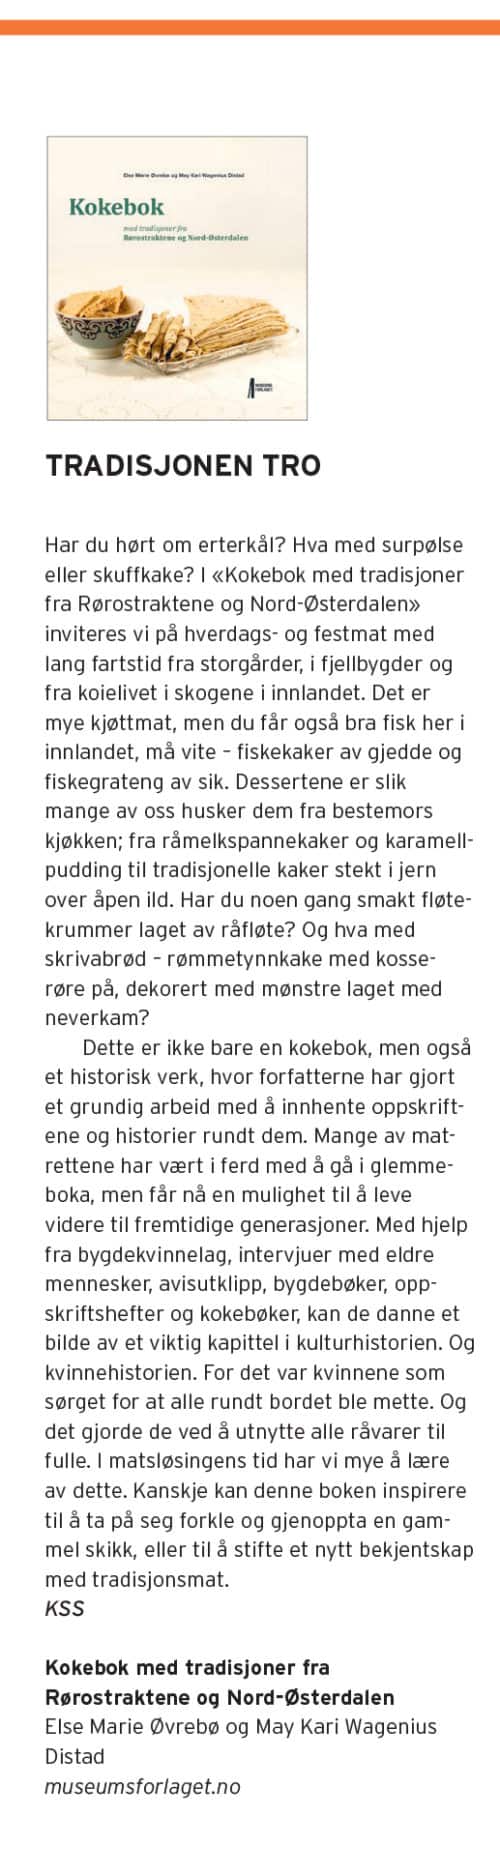 Presseklipp om boka Kokebok med tradisjoner fra Rørostraktene og Nord-Østerdalen i magasinet Ren Mat